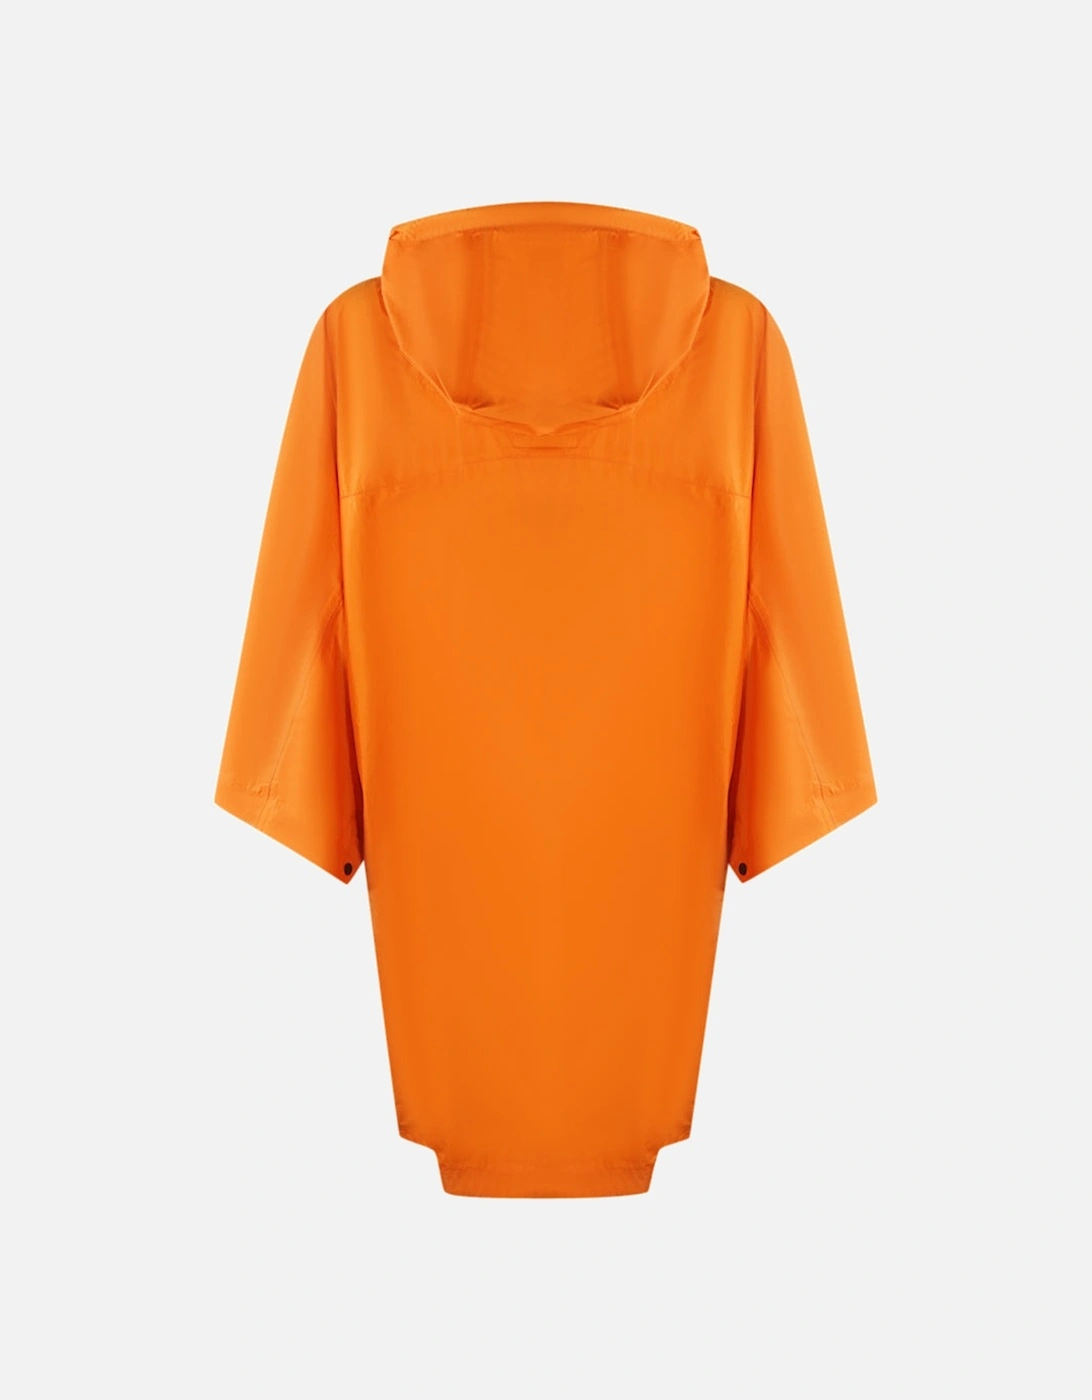 Angelou Marigold Orange Pullover Jacket